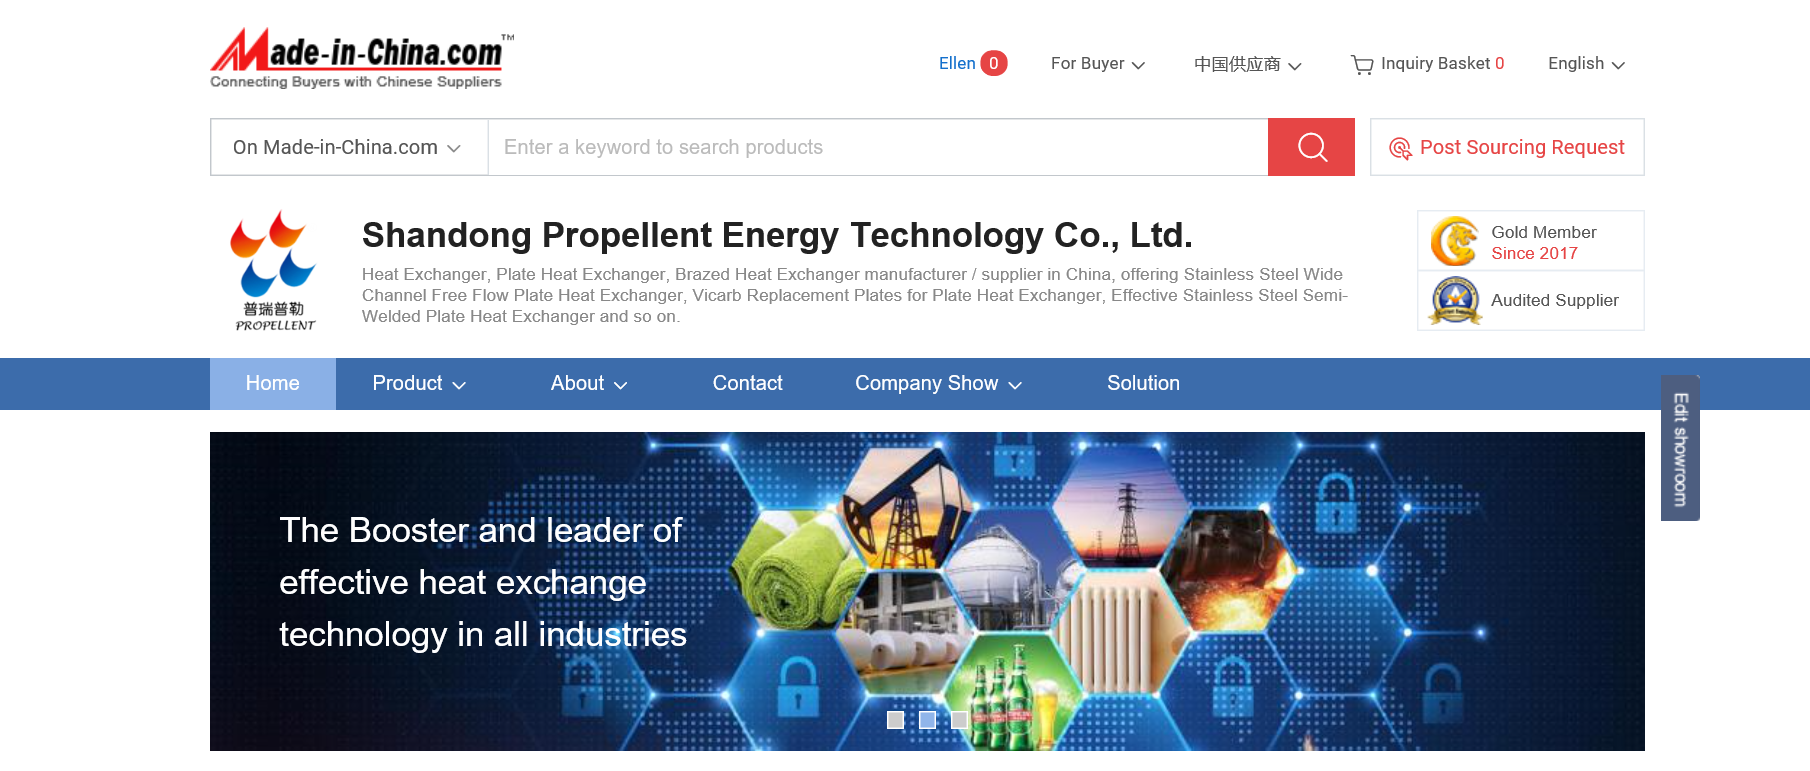 Propellent's international trade platform has been launched